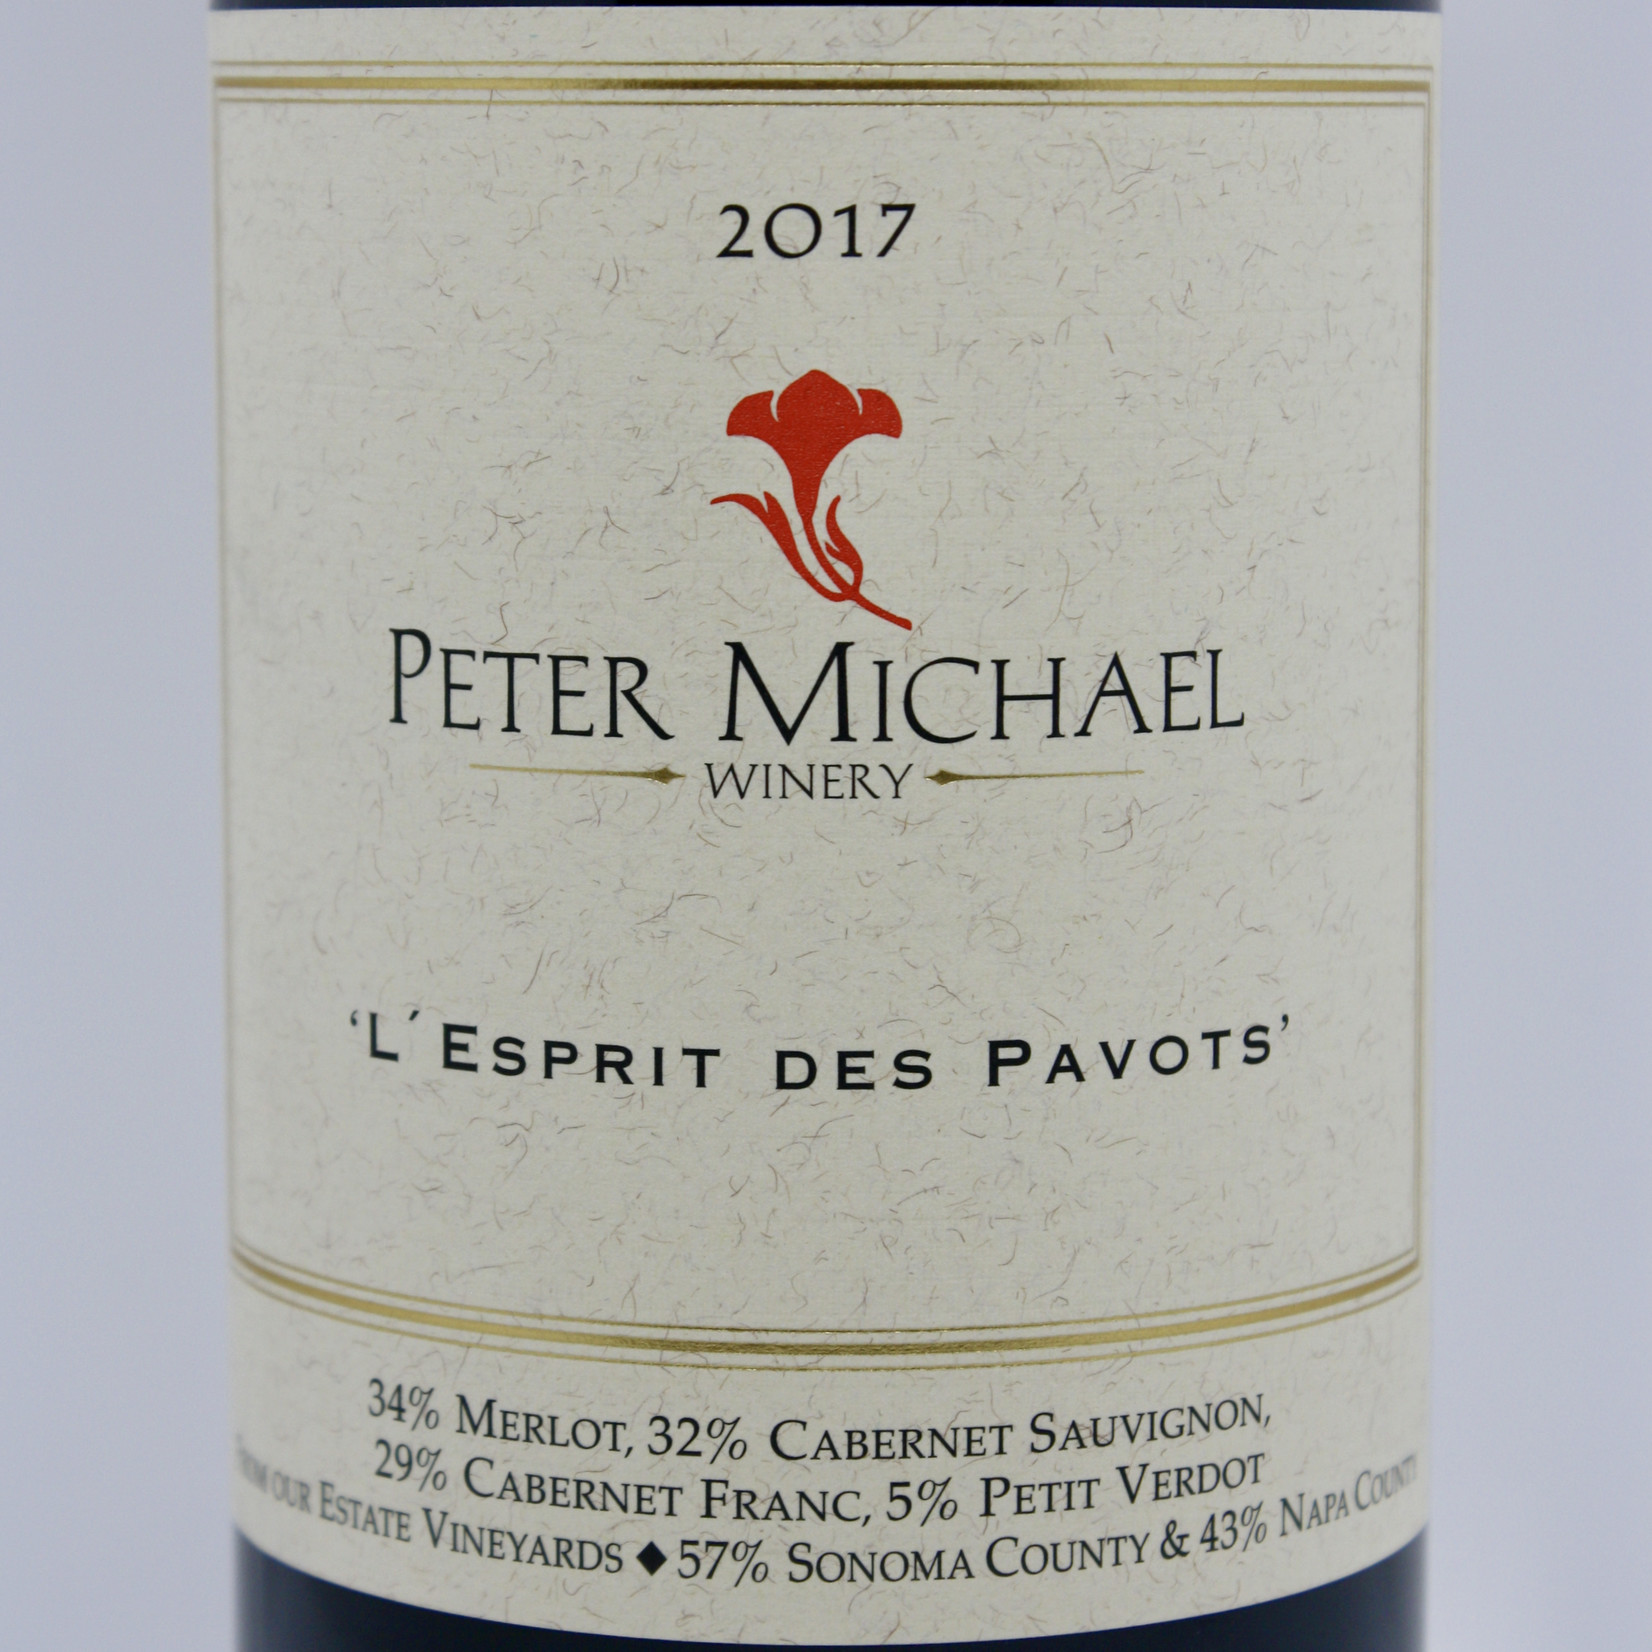 Peter Michael Peter Michael Winery, "L'esprit des Pavots" Claret 2017, Les Pavots Vineyard, Knights Valley, Napa, CA